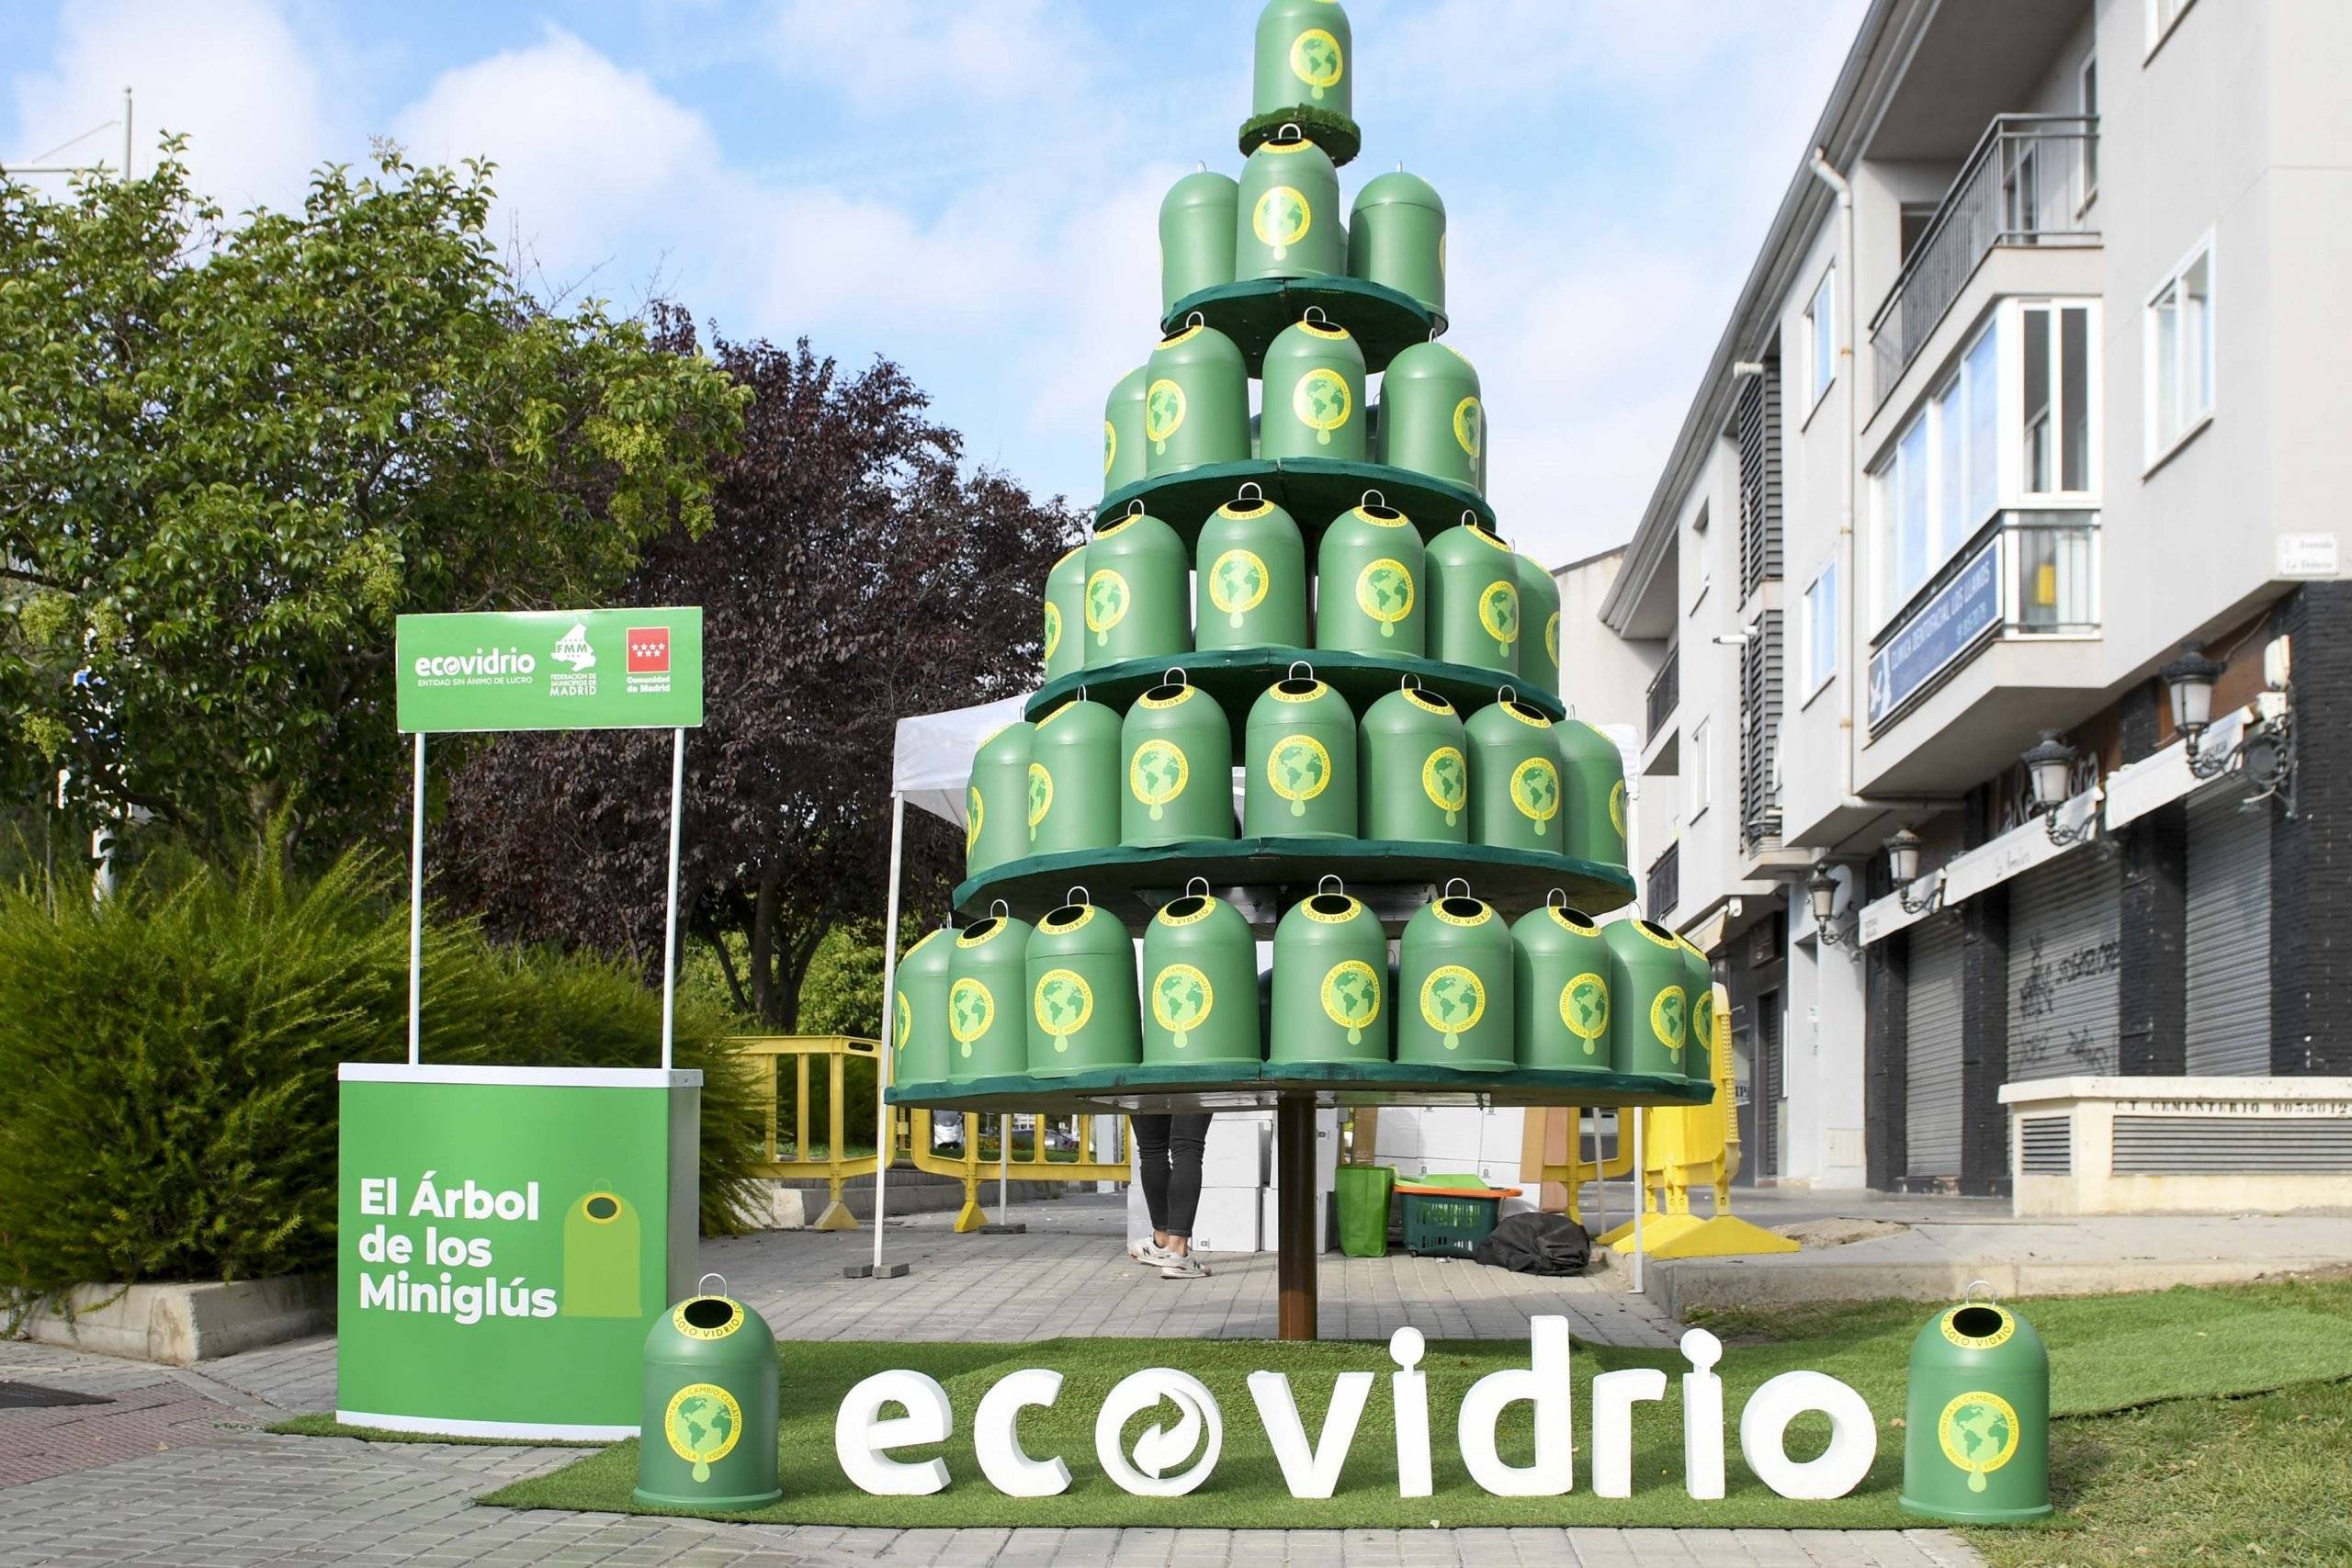 Imagen del stand de Ecovidrio.